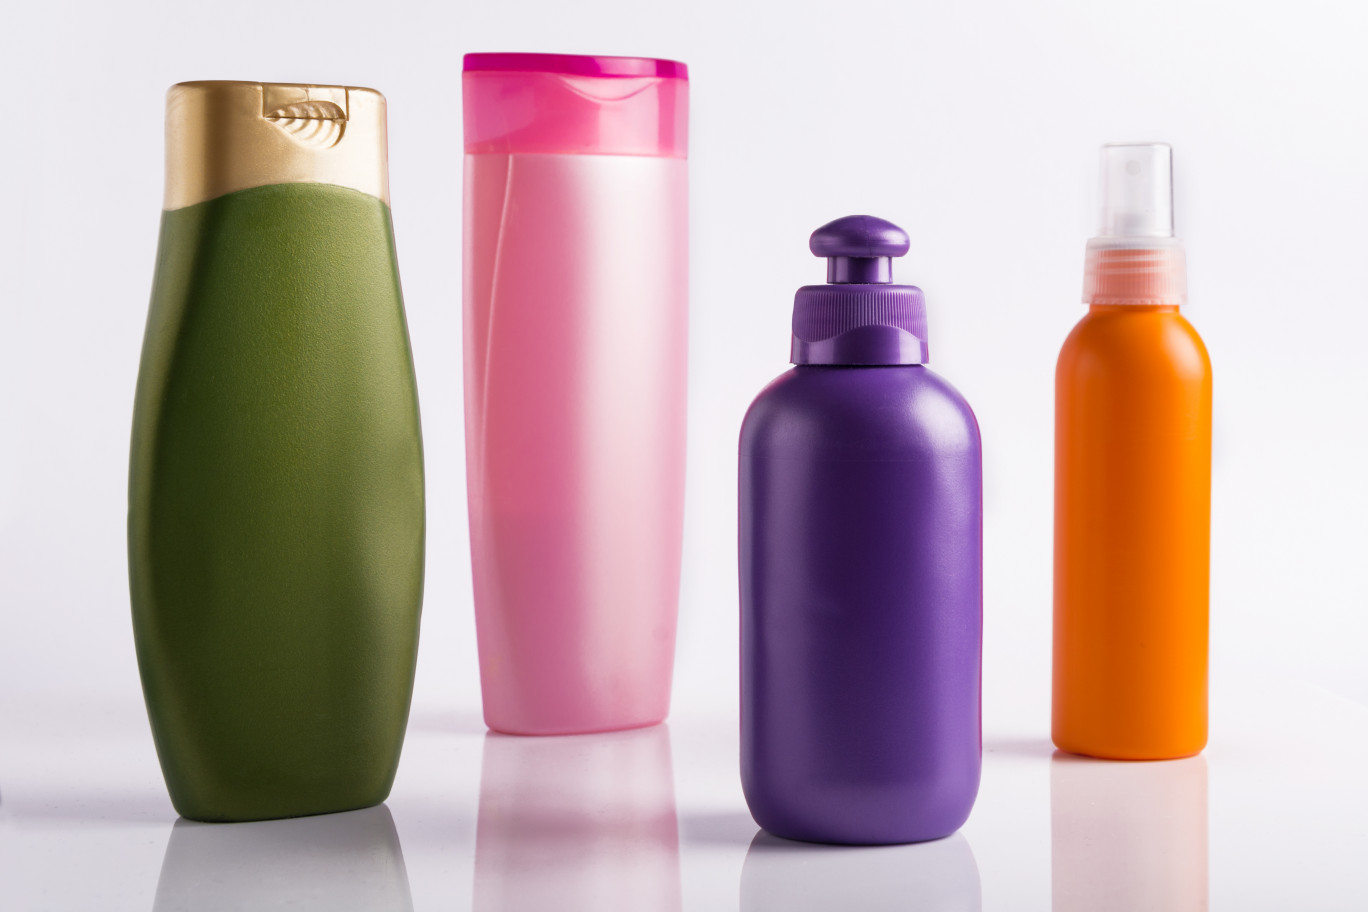 Réduire l'utilisation d'emballages plastiques : un engagement fort de l'industrie de la cosmétique. (c)AdobeStock